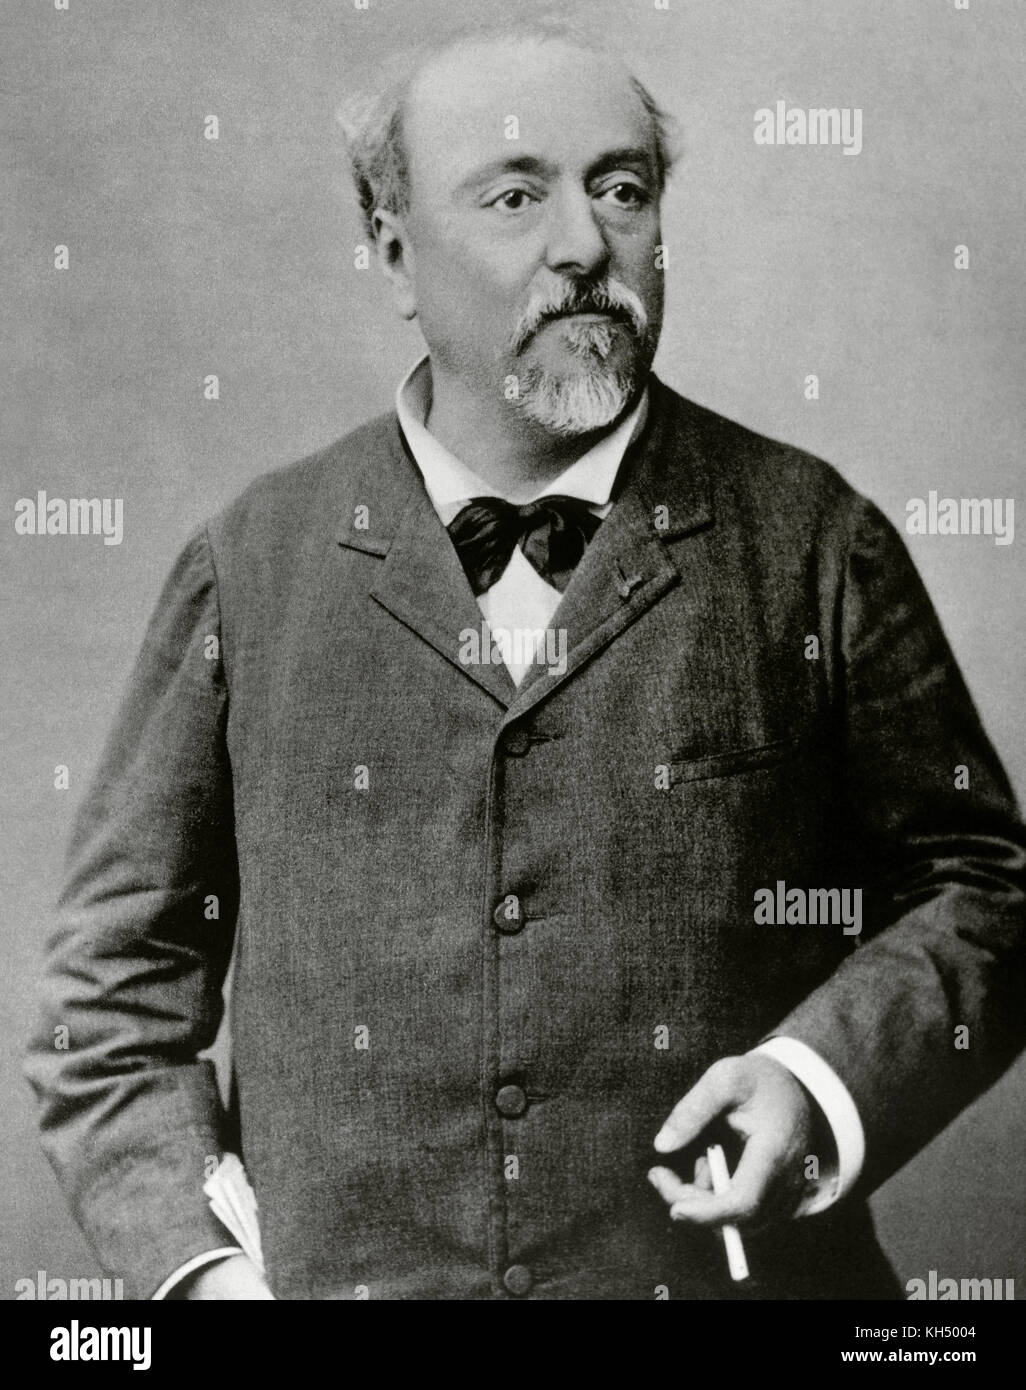 Emmanuel chabrier (1841-1894). Der französische Komponist. Portrait. fotografie. Stockfoto